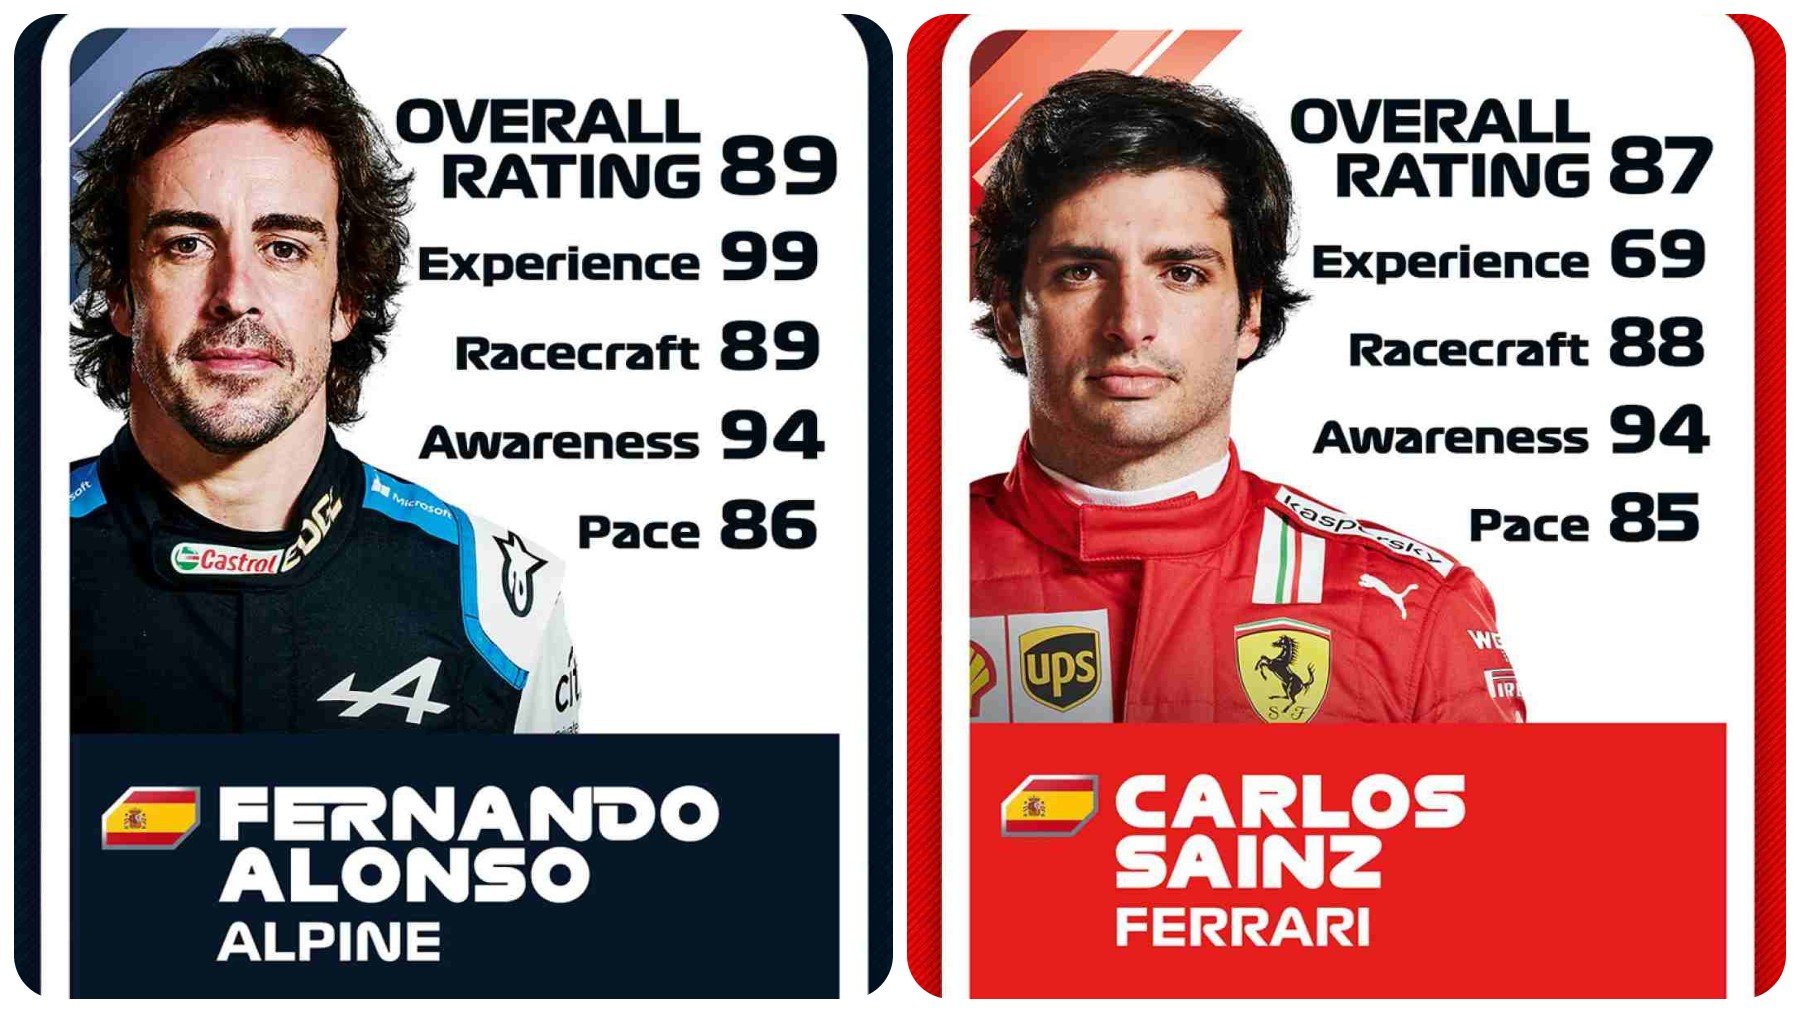 Valoraciones de Fernando Alonso y Carlos Sainz. (F1 2021)